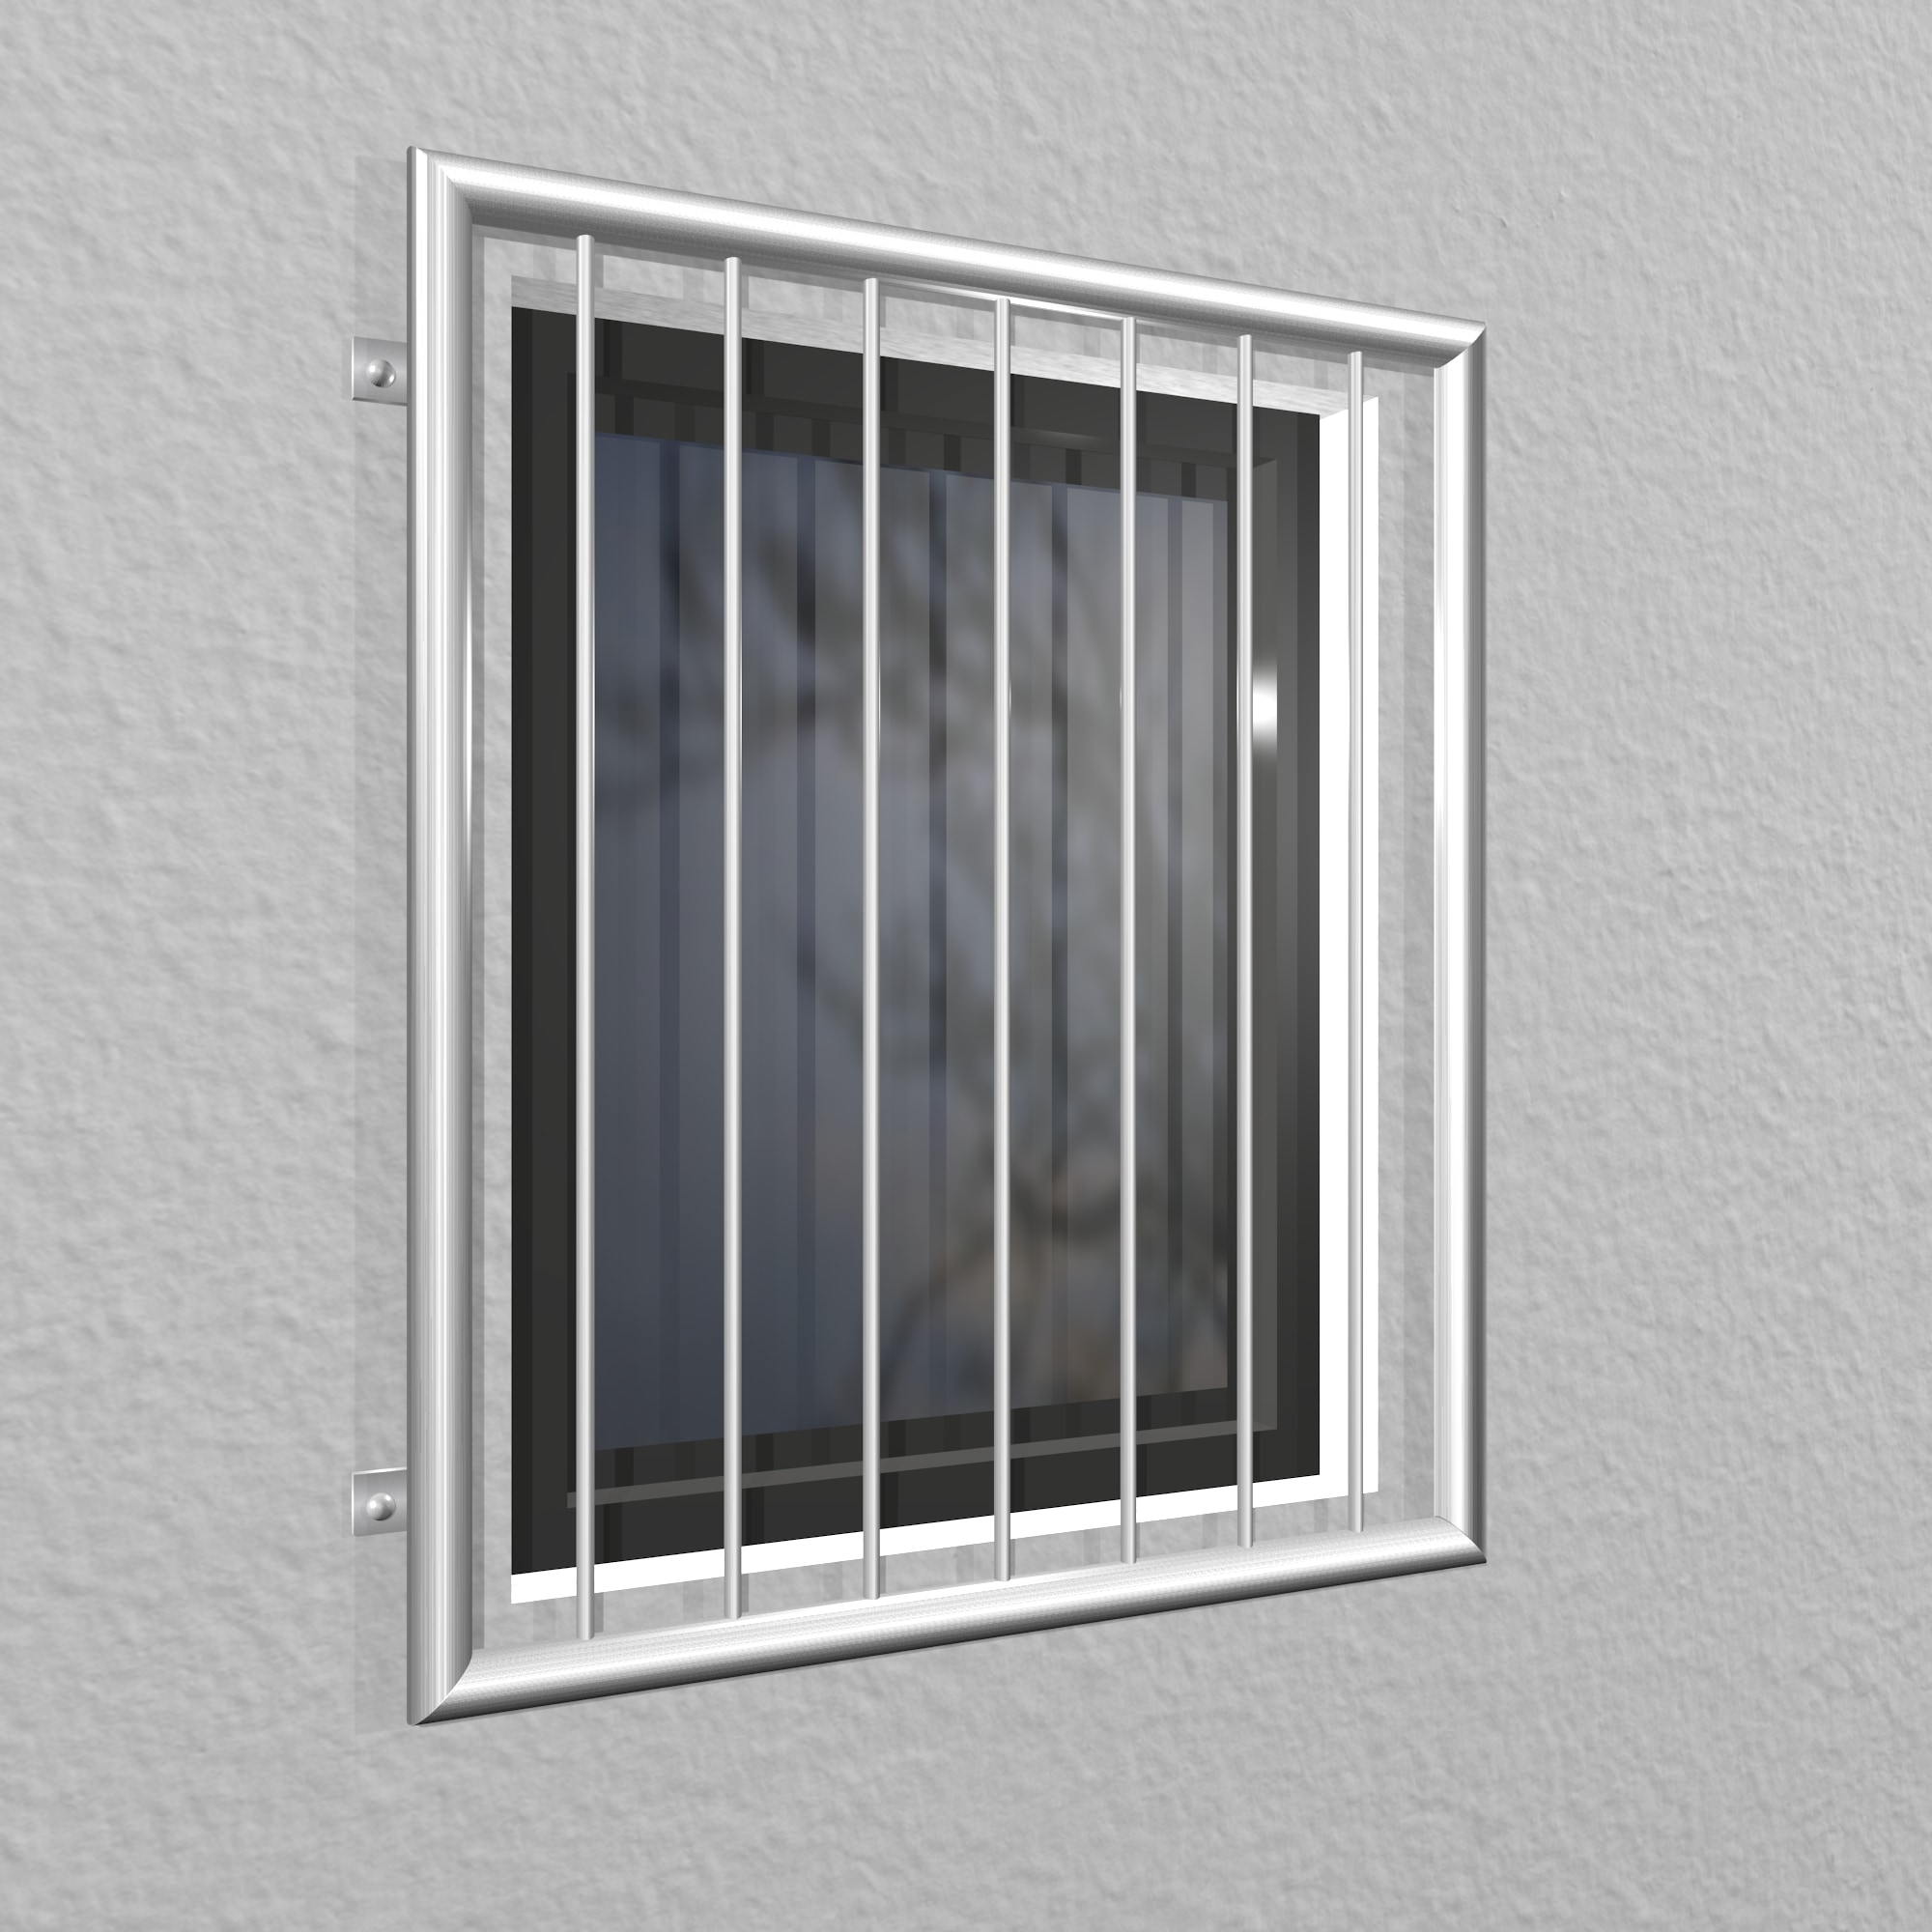 Edelstahl Sicherheitsstange 2-fach Fenstersicherung Einbruchschutz Fenstergitter 